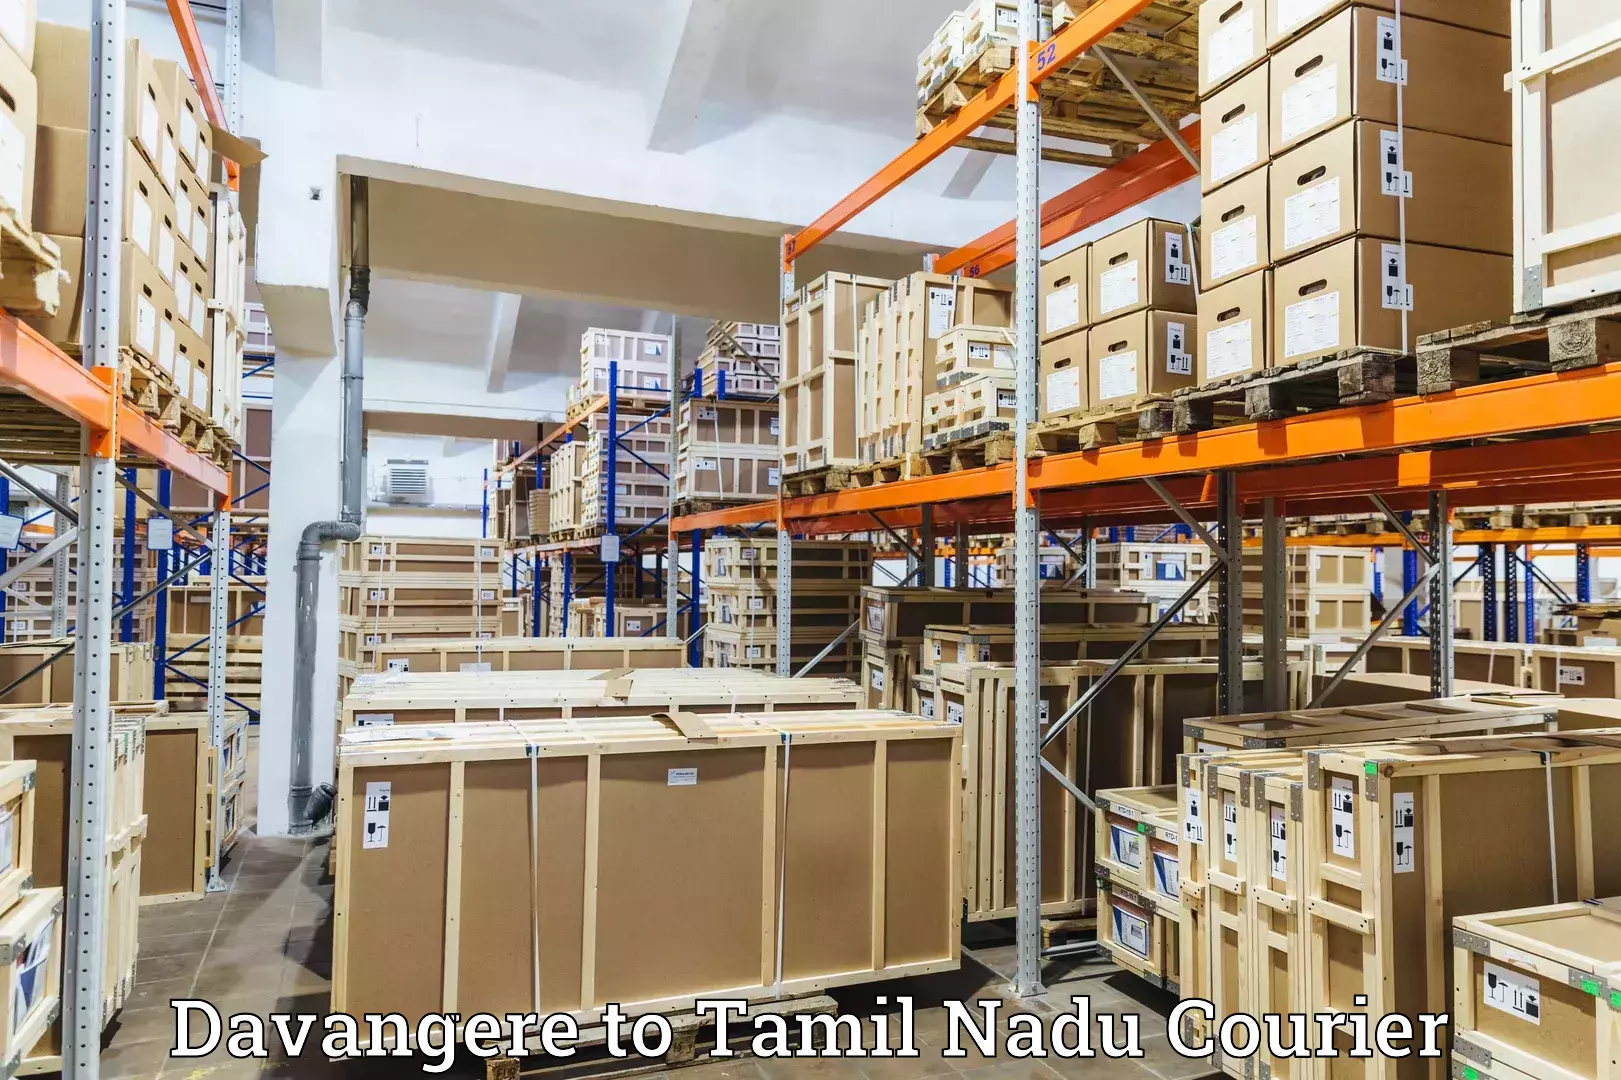 Courier service efficiency Davangere to IIIT Tiruchirappalli